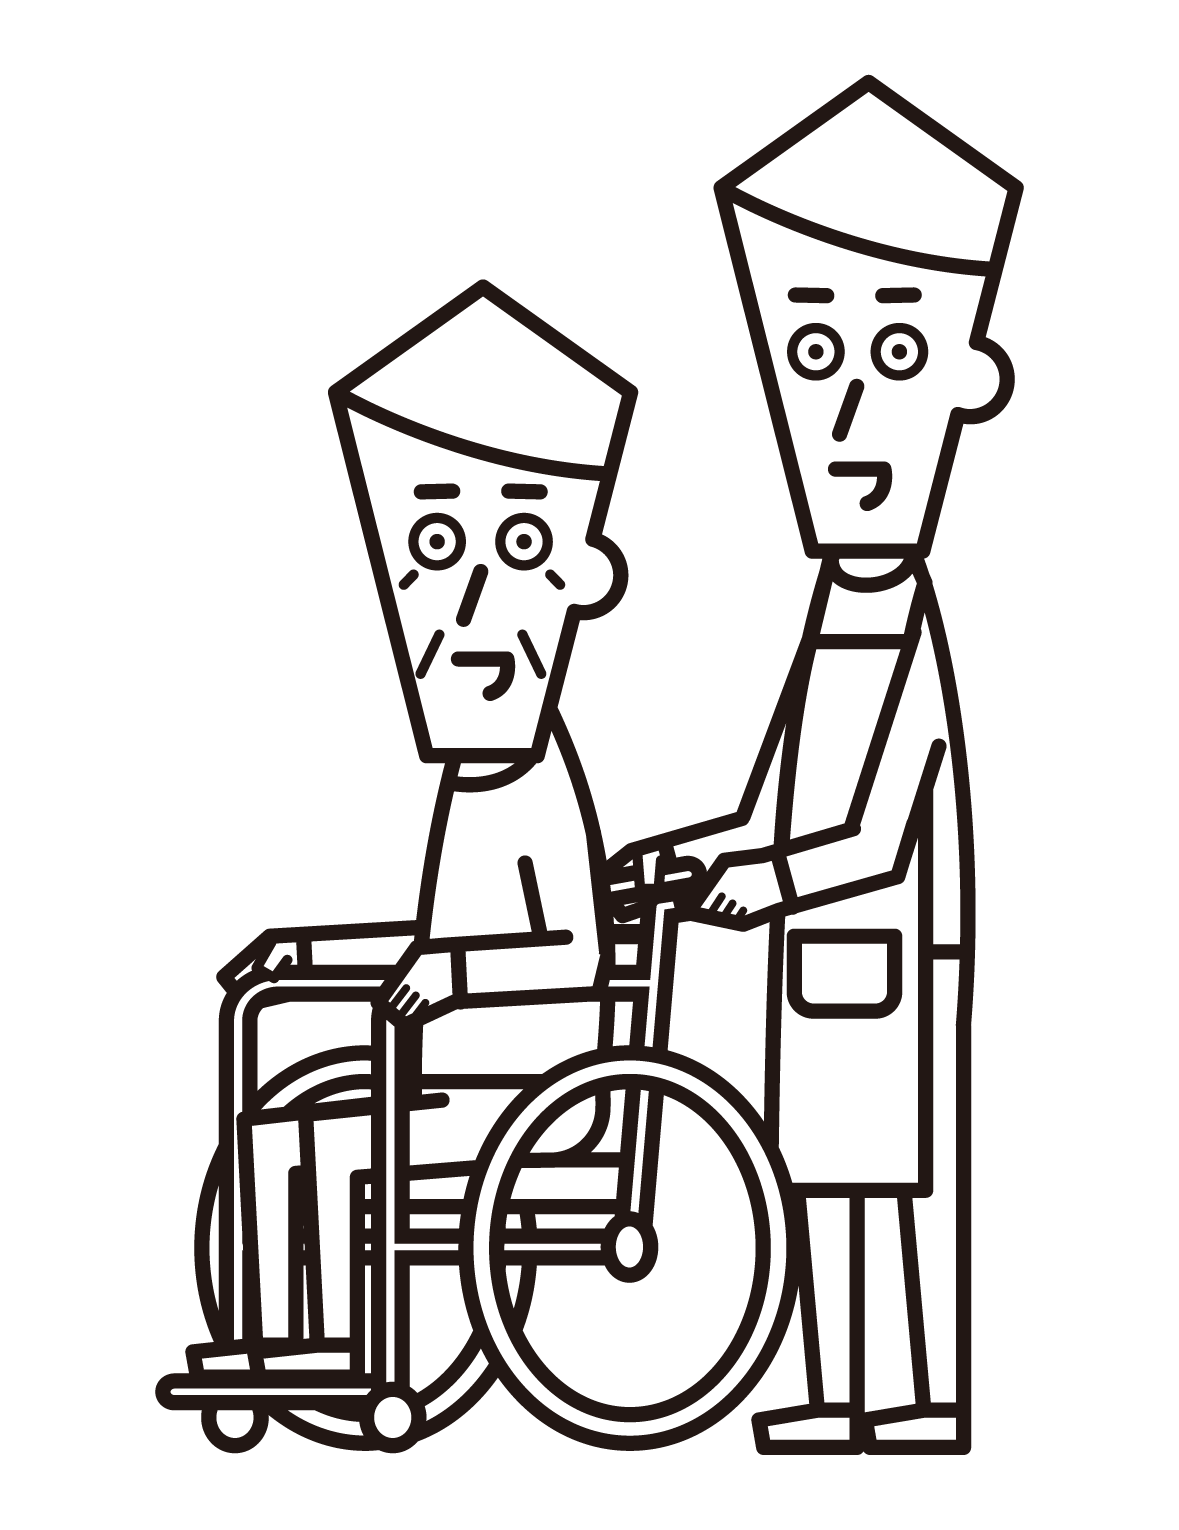 휠체어를 탄 사람(할아버지)과 방문 간병인(남성)이 밀고 있는 모습